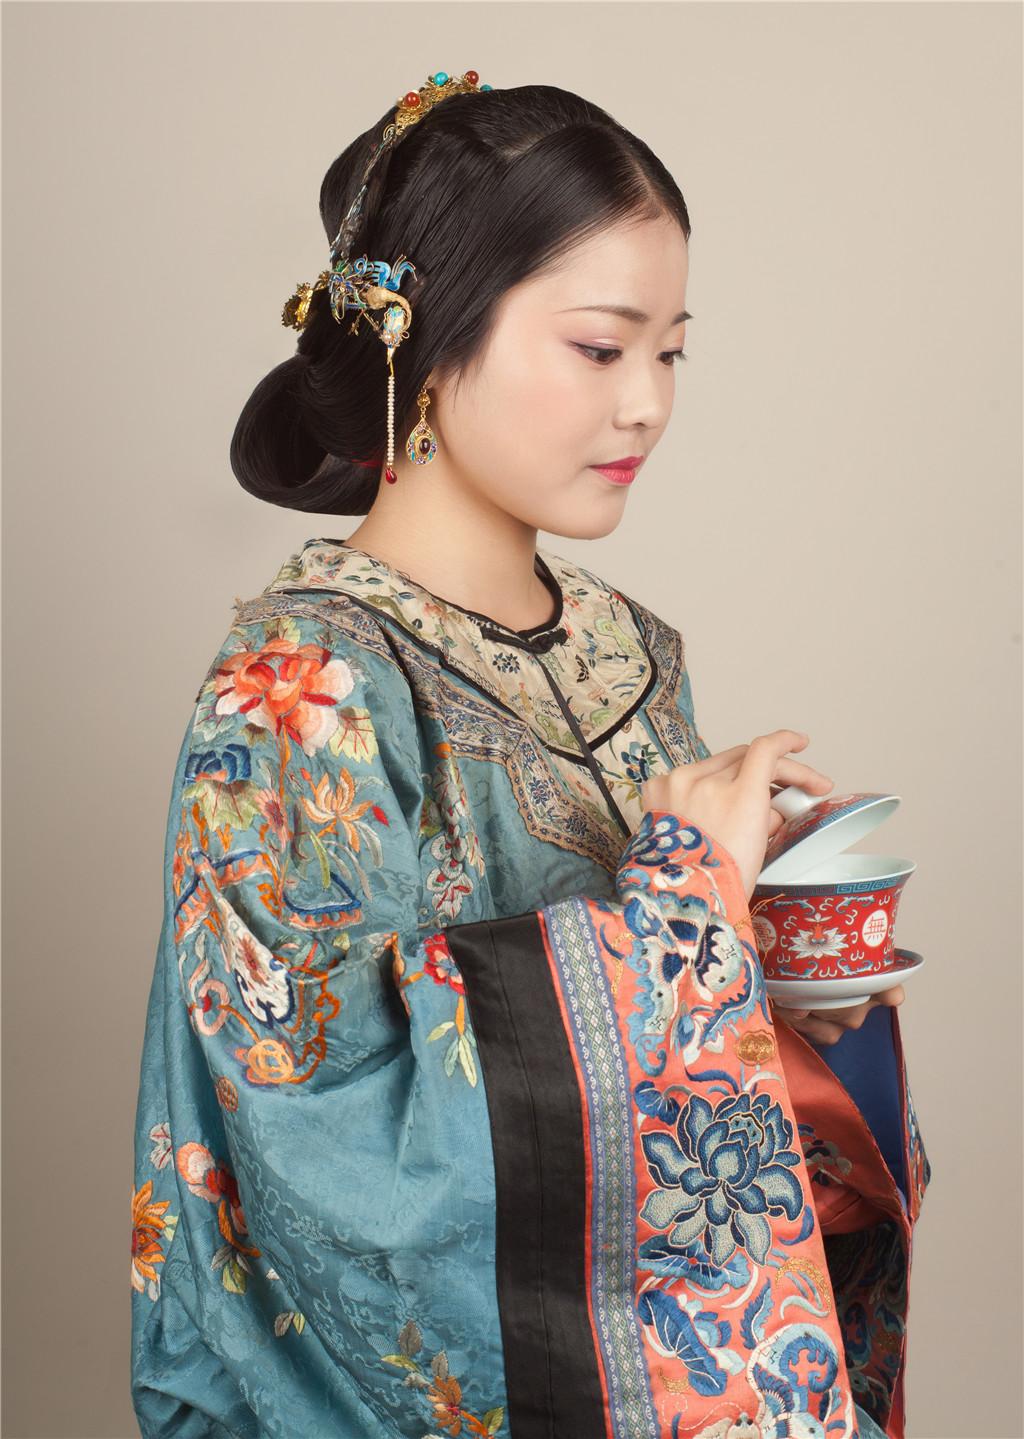 清朝 民间女子图片